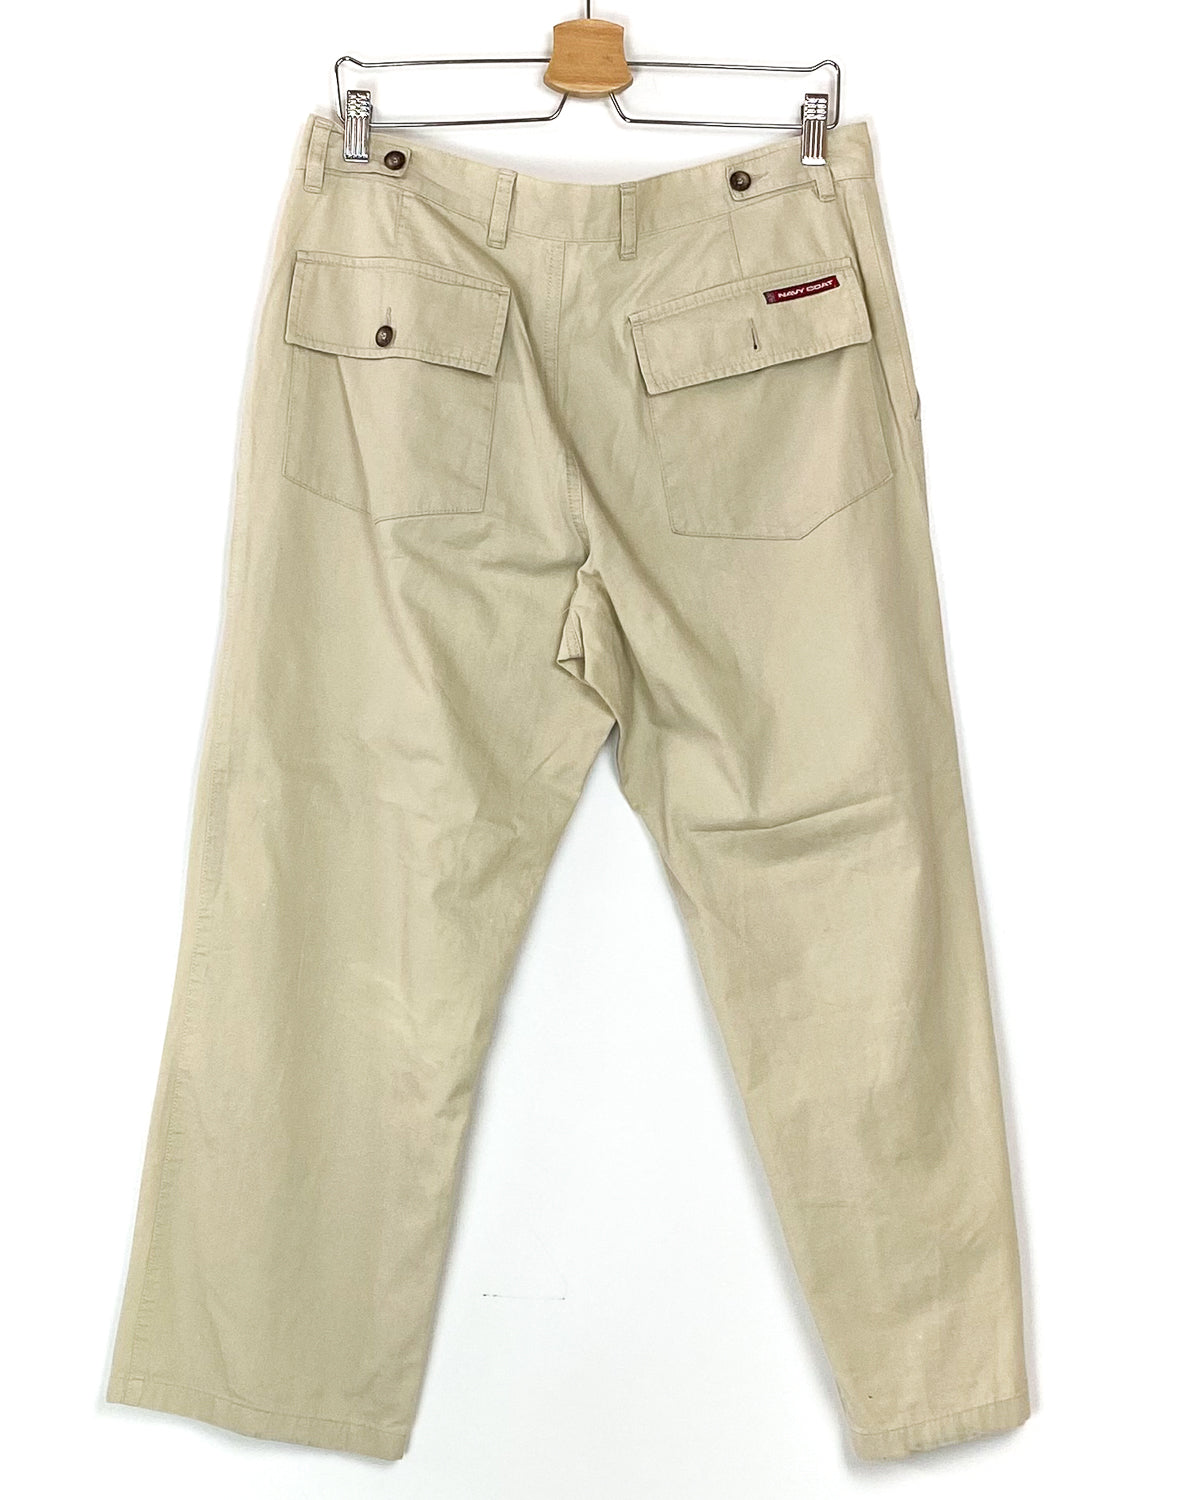 Pantalone Vintage Corto Taglia 52